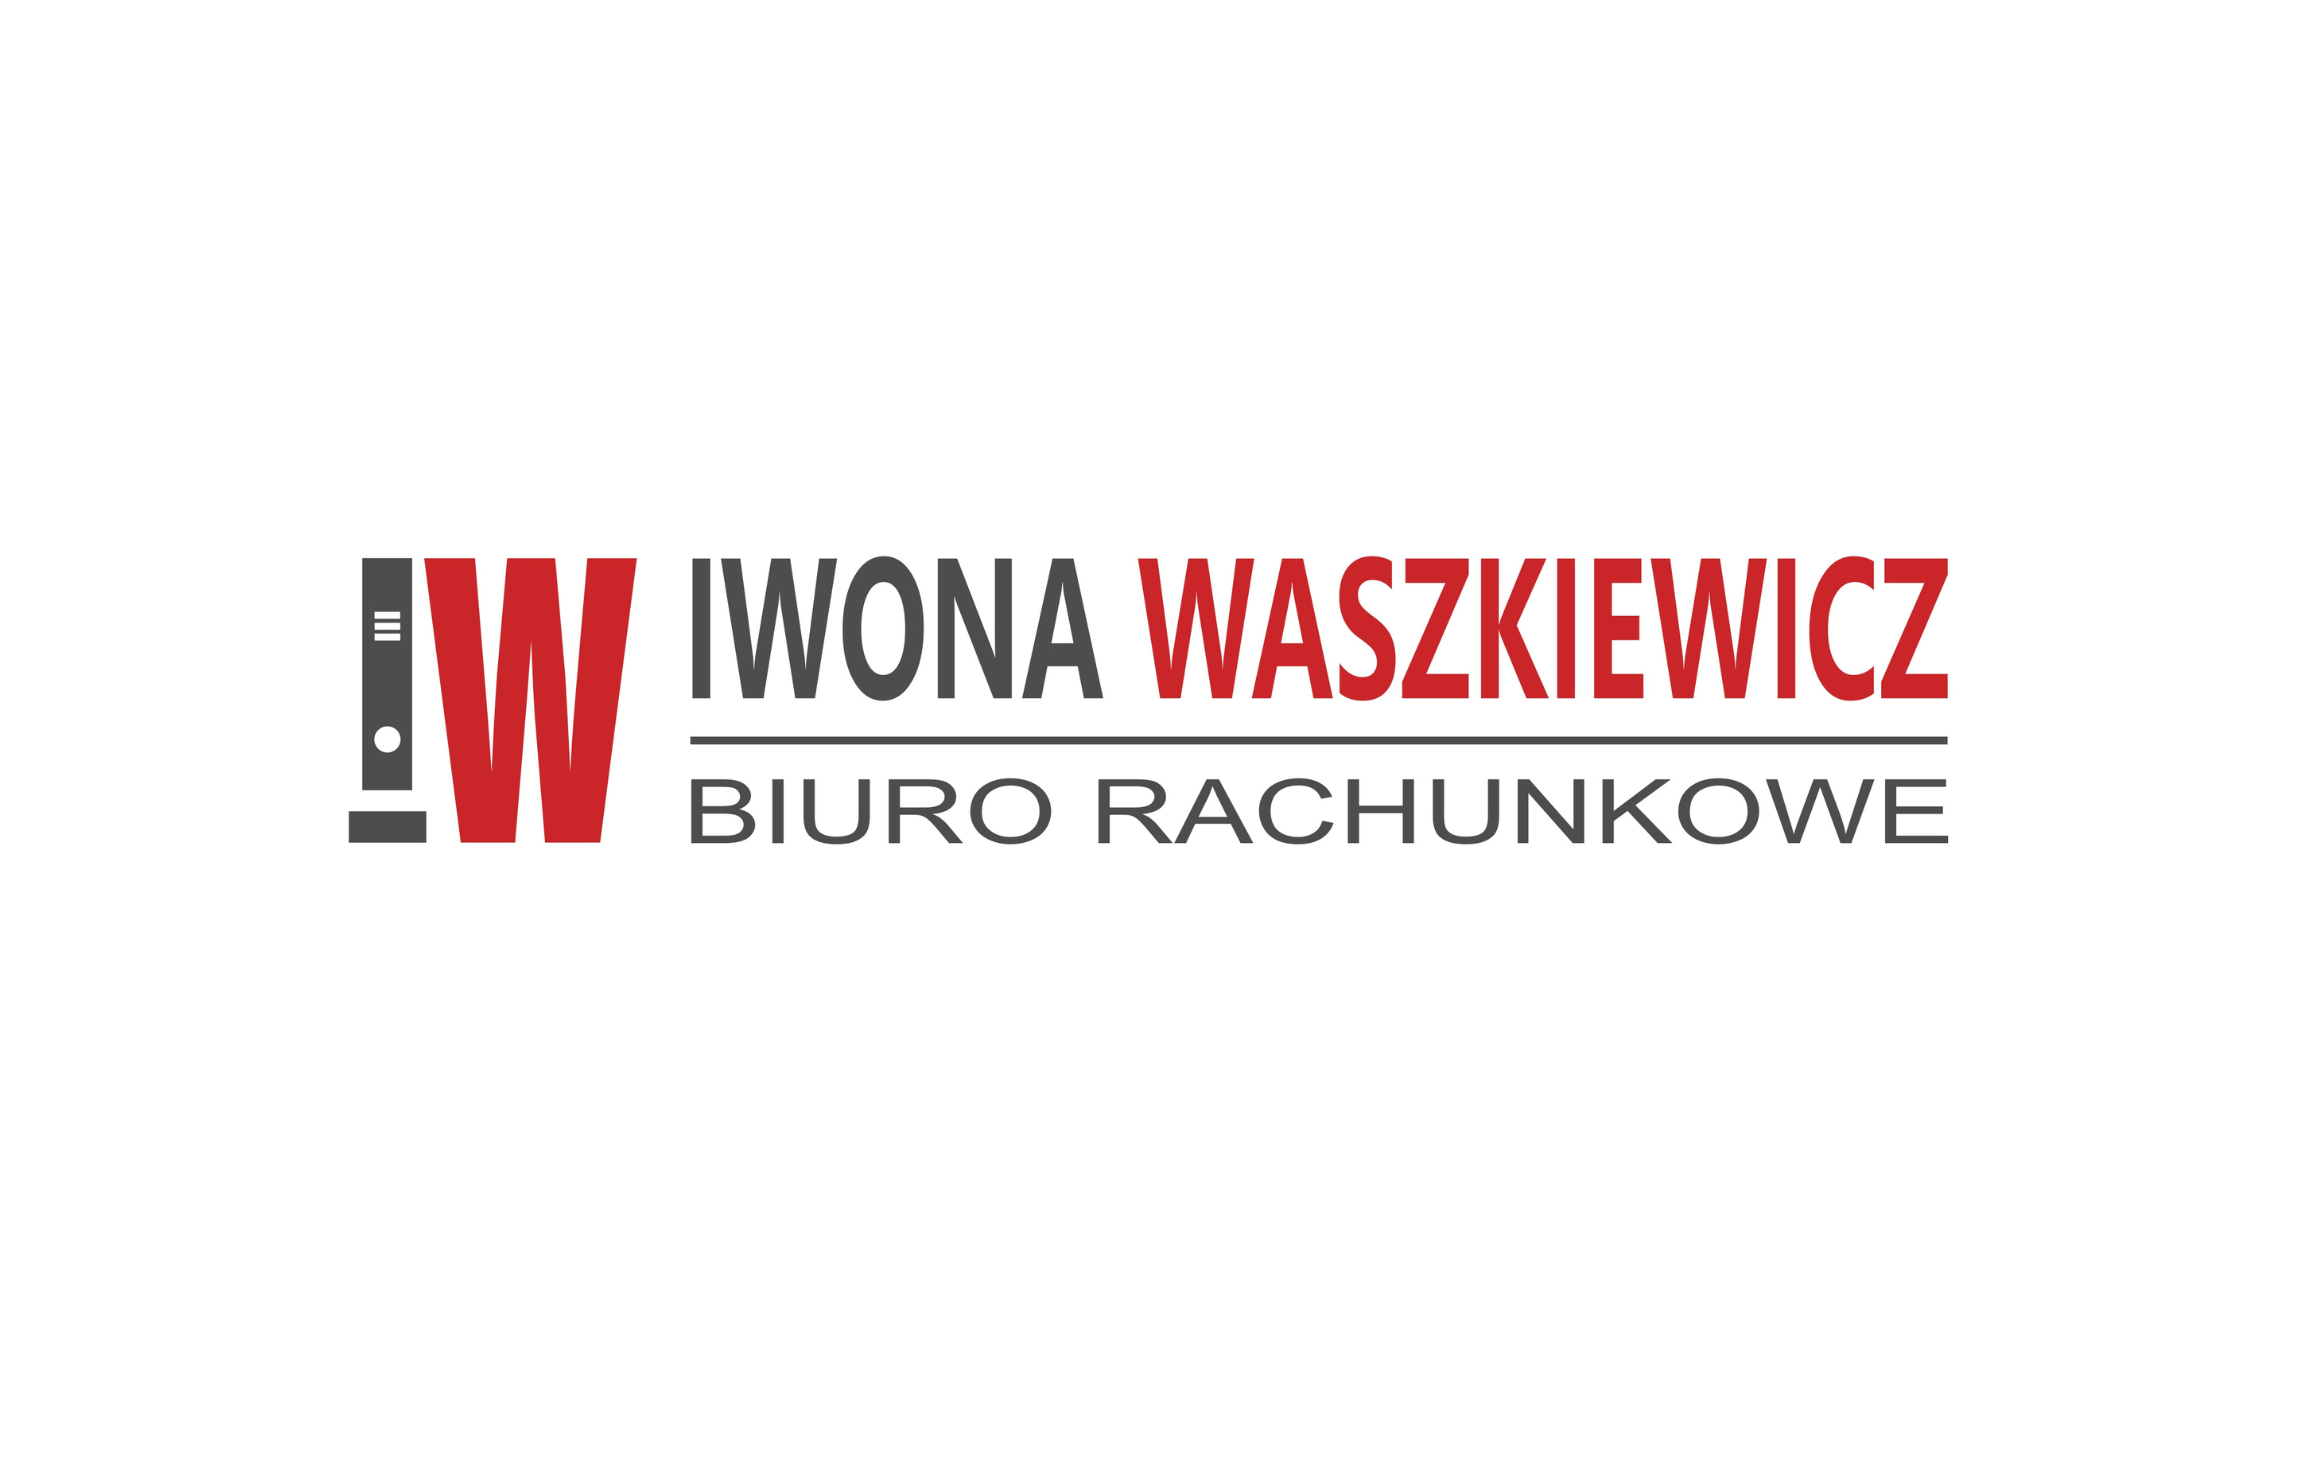 Iwona Waszkiewicz - Biuro Rachunkowe